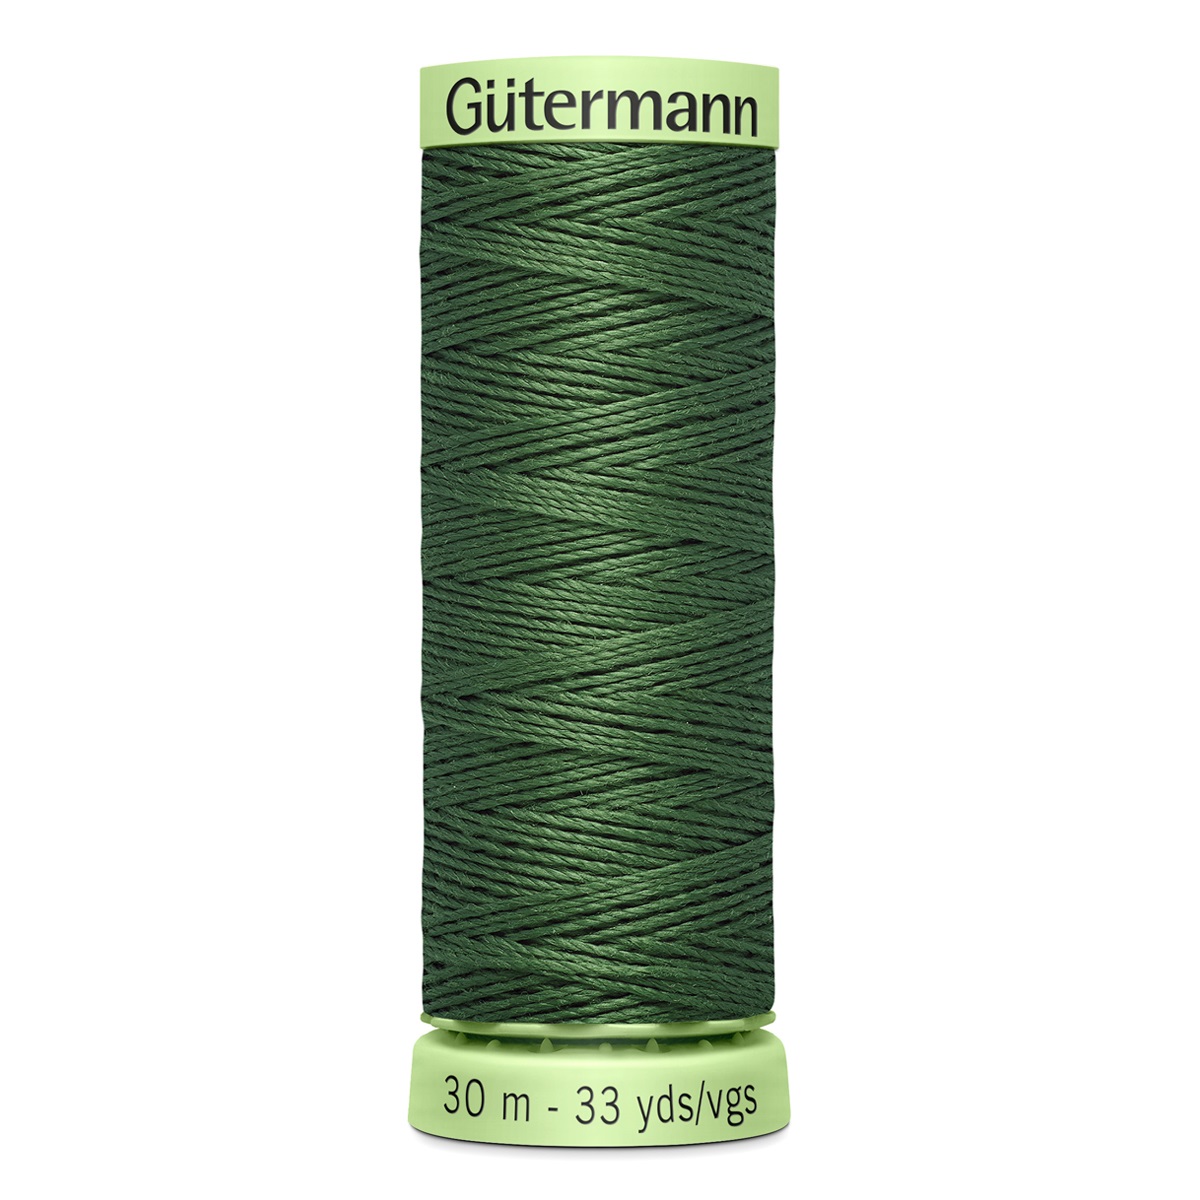 Нить Gutermann Top Stitch для отстрочки, 744506, 30 м (561 серо-зеленый), 5 шт